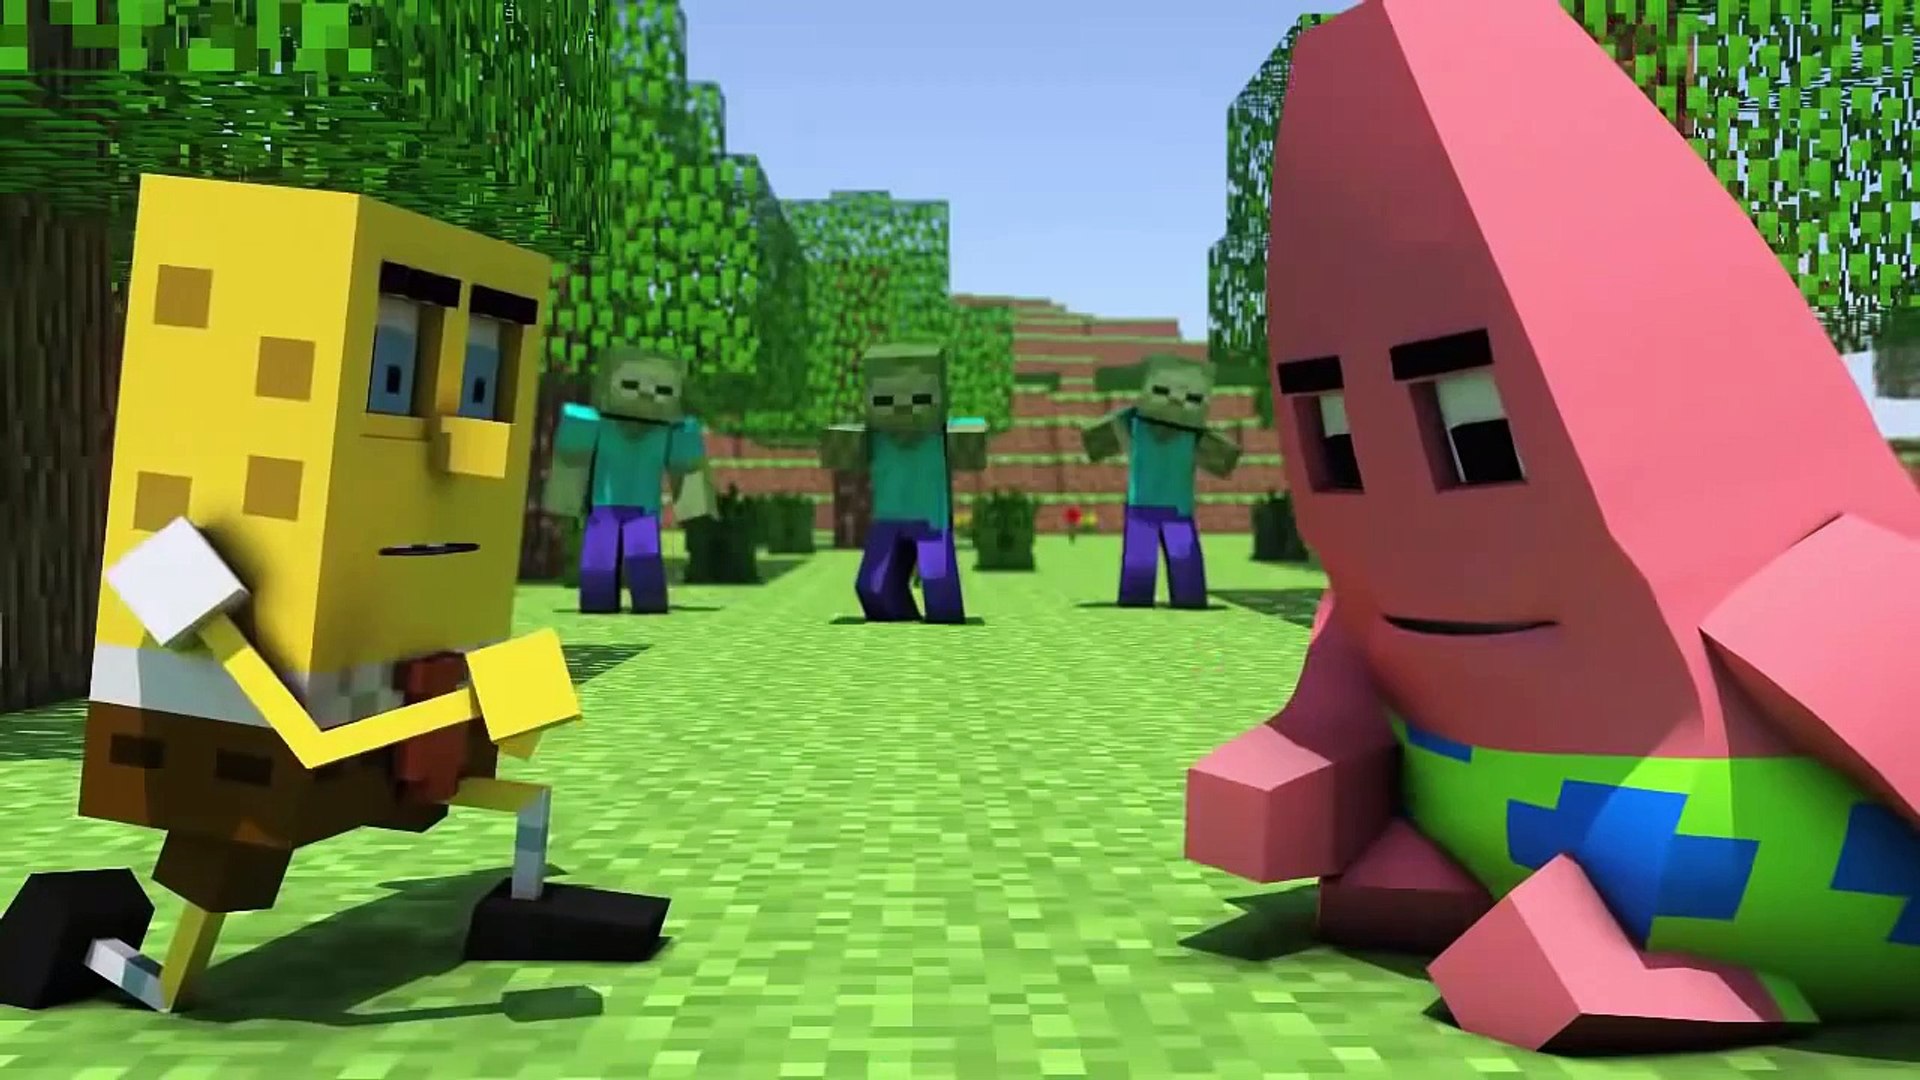 Minecraft O filme Desenho Animado parte 2 HD - video Dailymotion